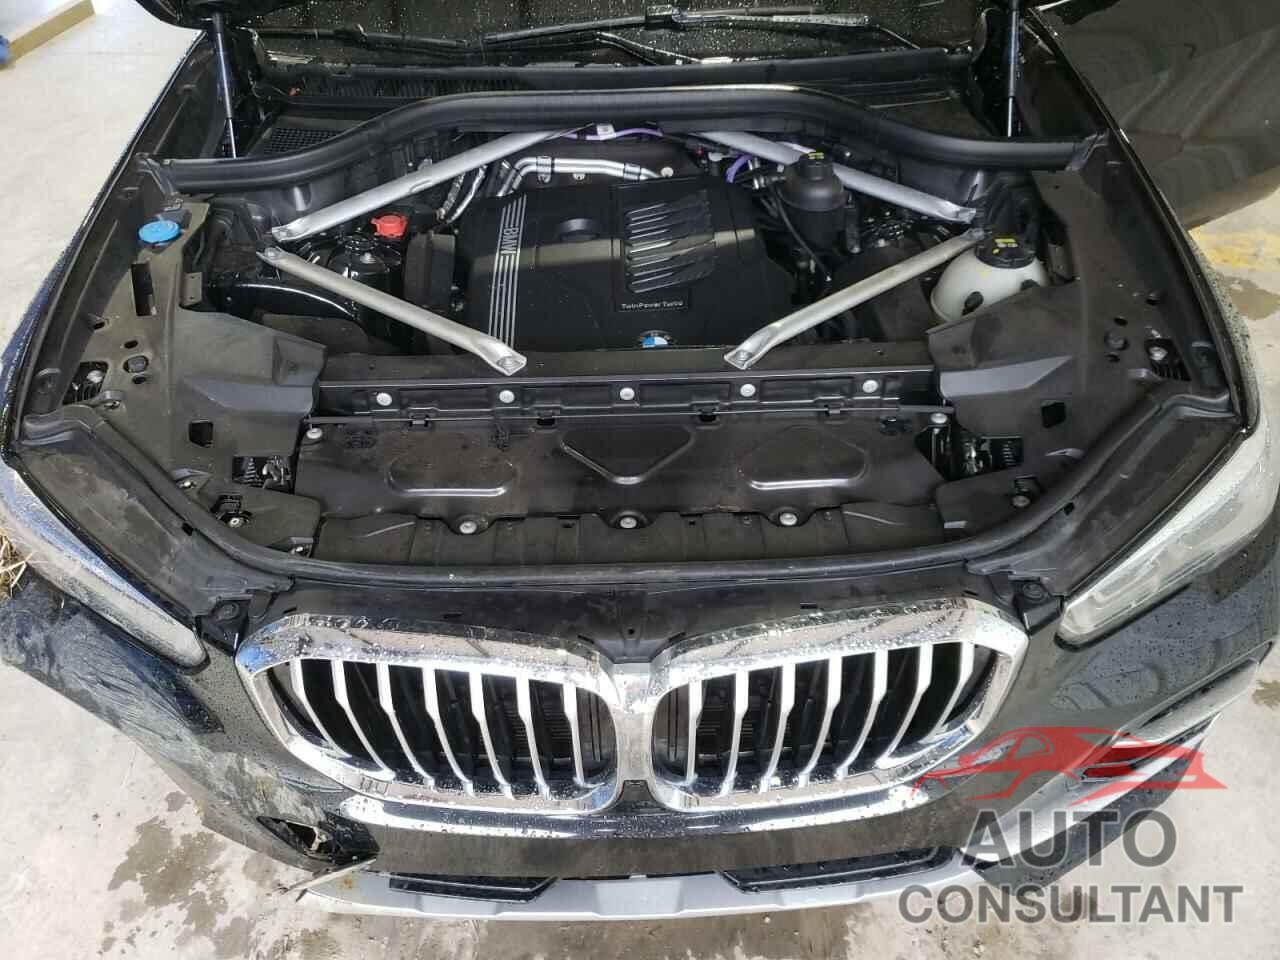 BMW X5 2022 - 5UXCR6C04N9K23144